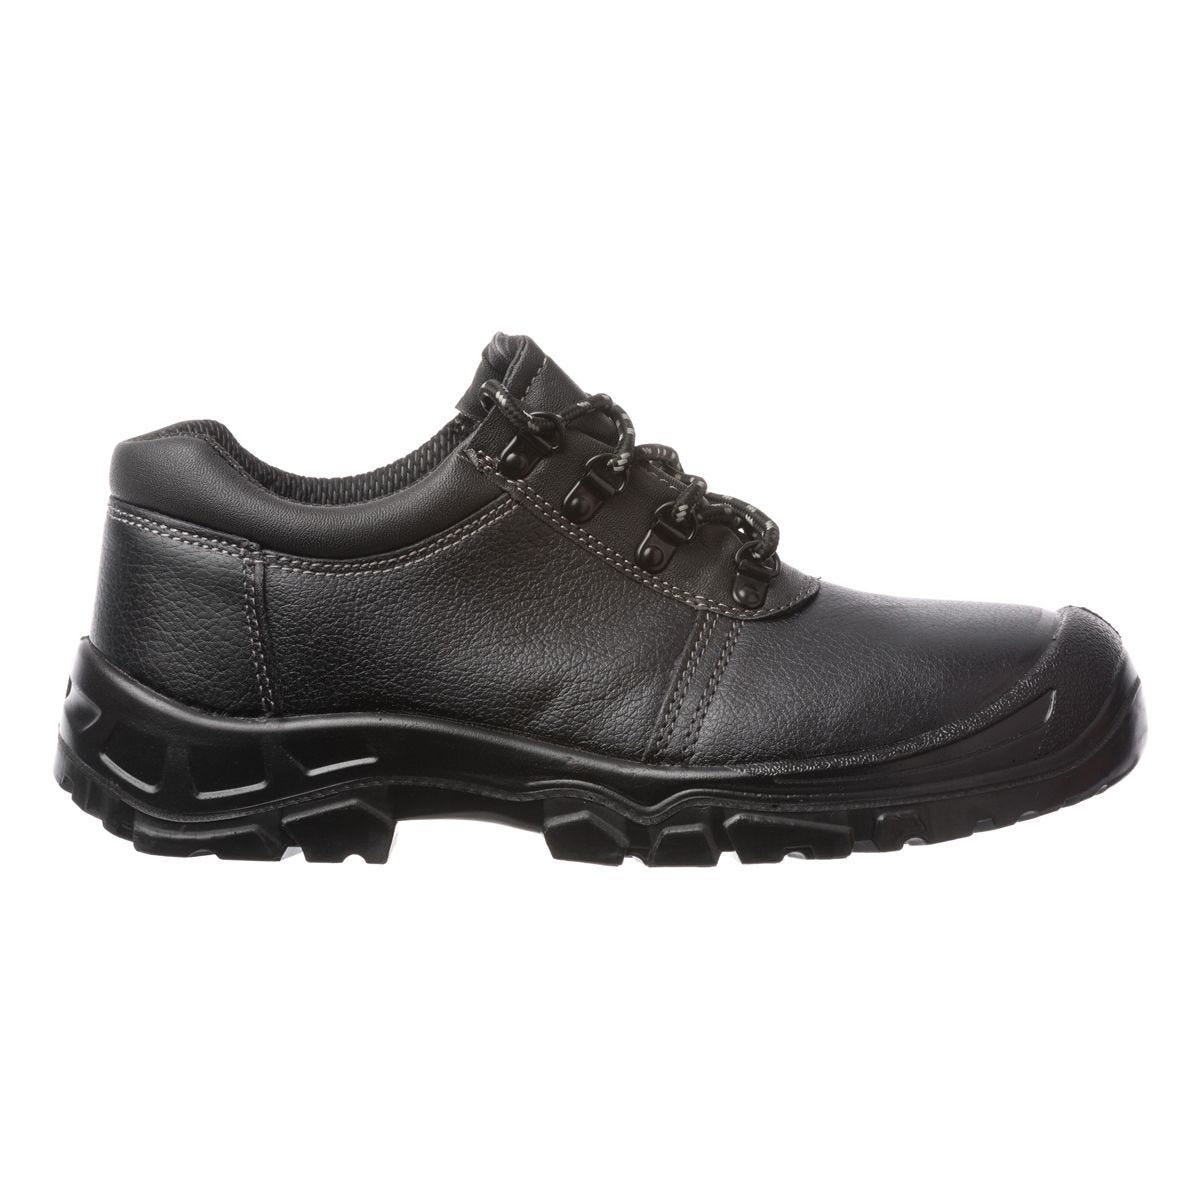 Chaussures de sécurité basses Azurite II S3 ESD noir - Coverguard - Taille 39 0